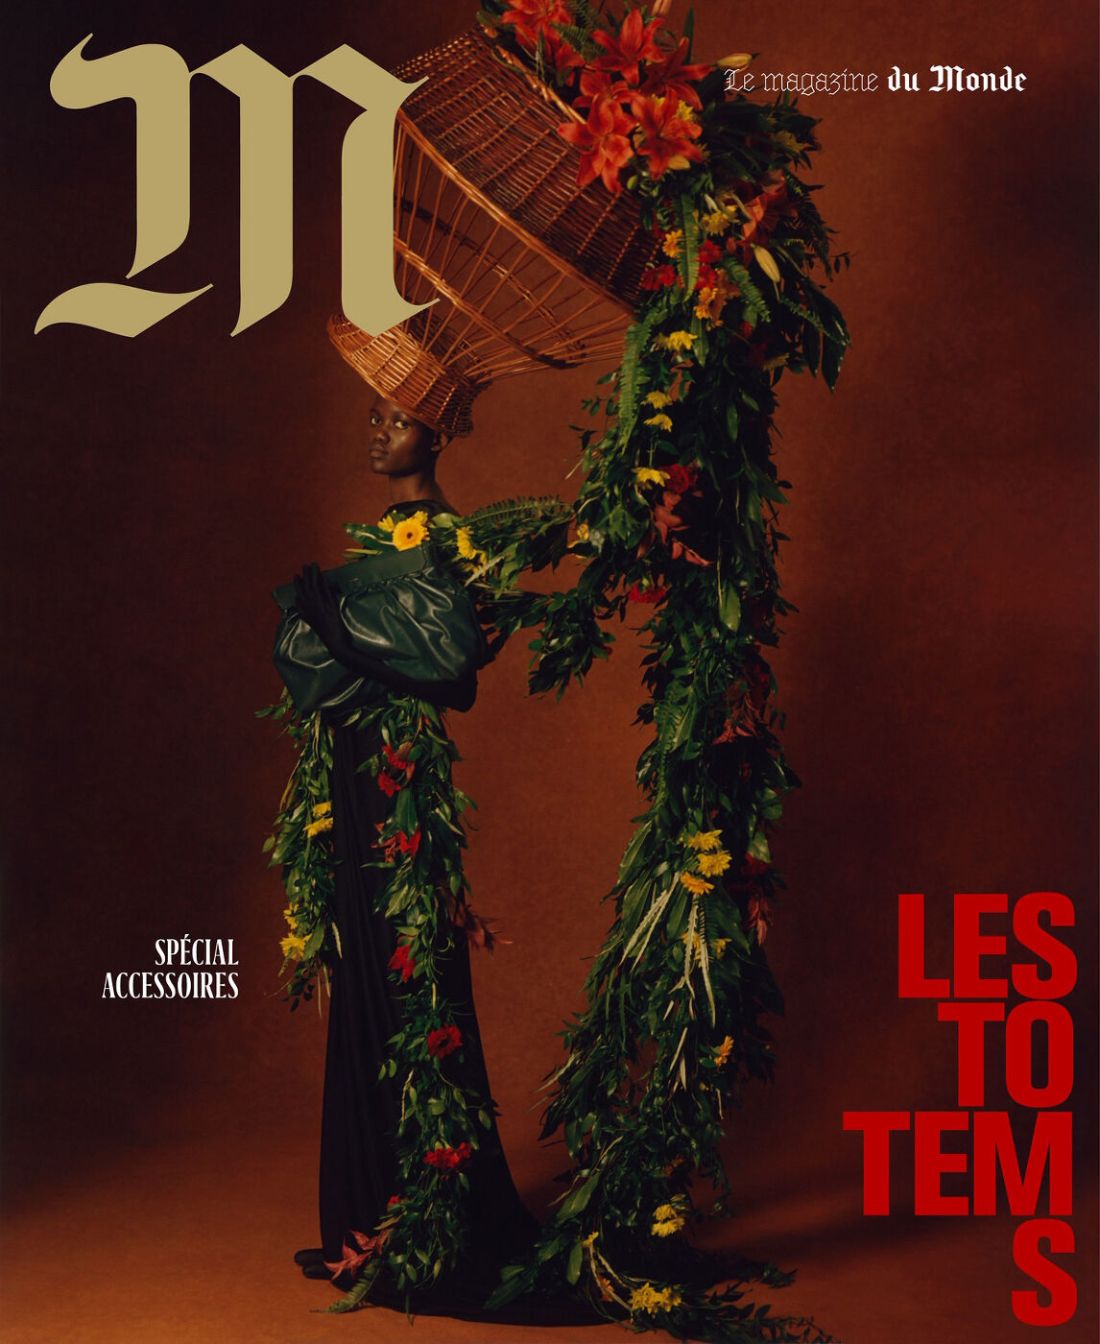 Les Totems by Theo de Gueltzl for M le Magazine du Monde November 2020